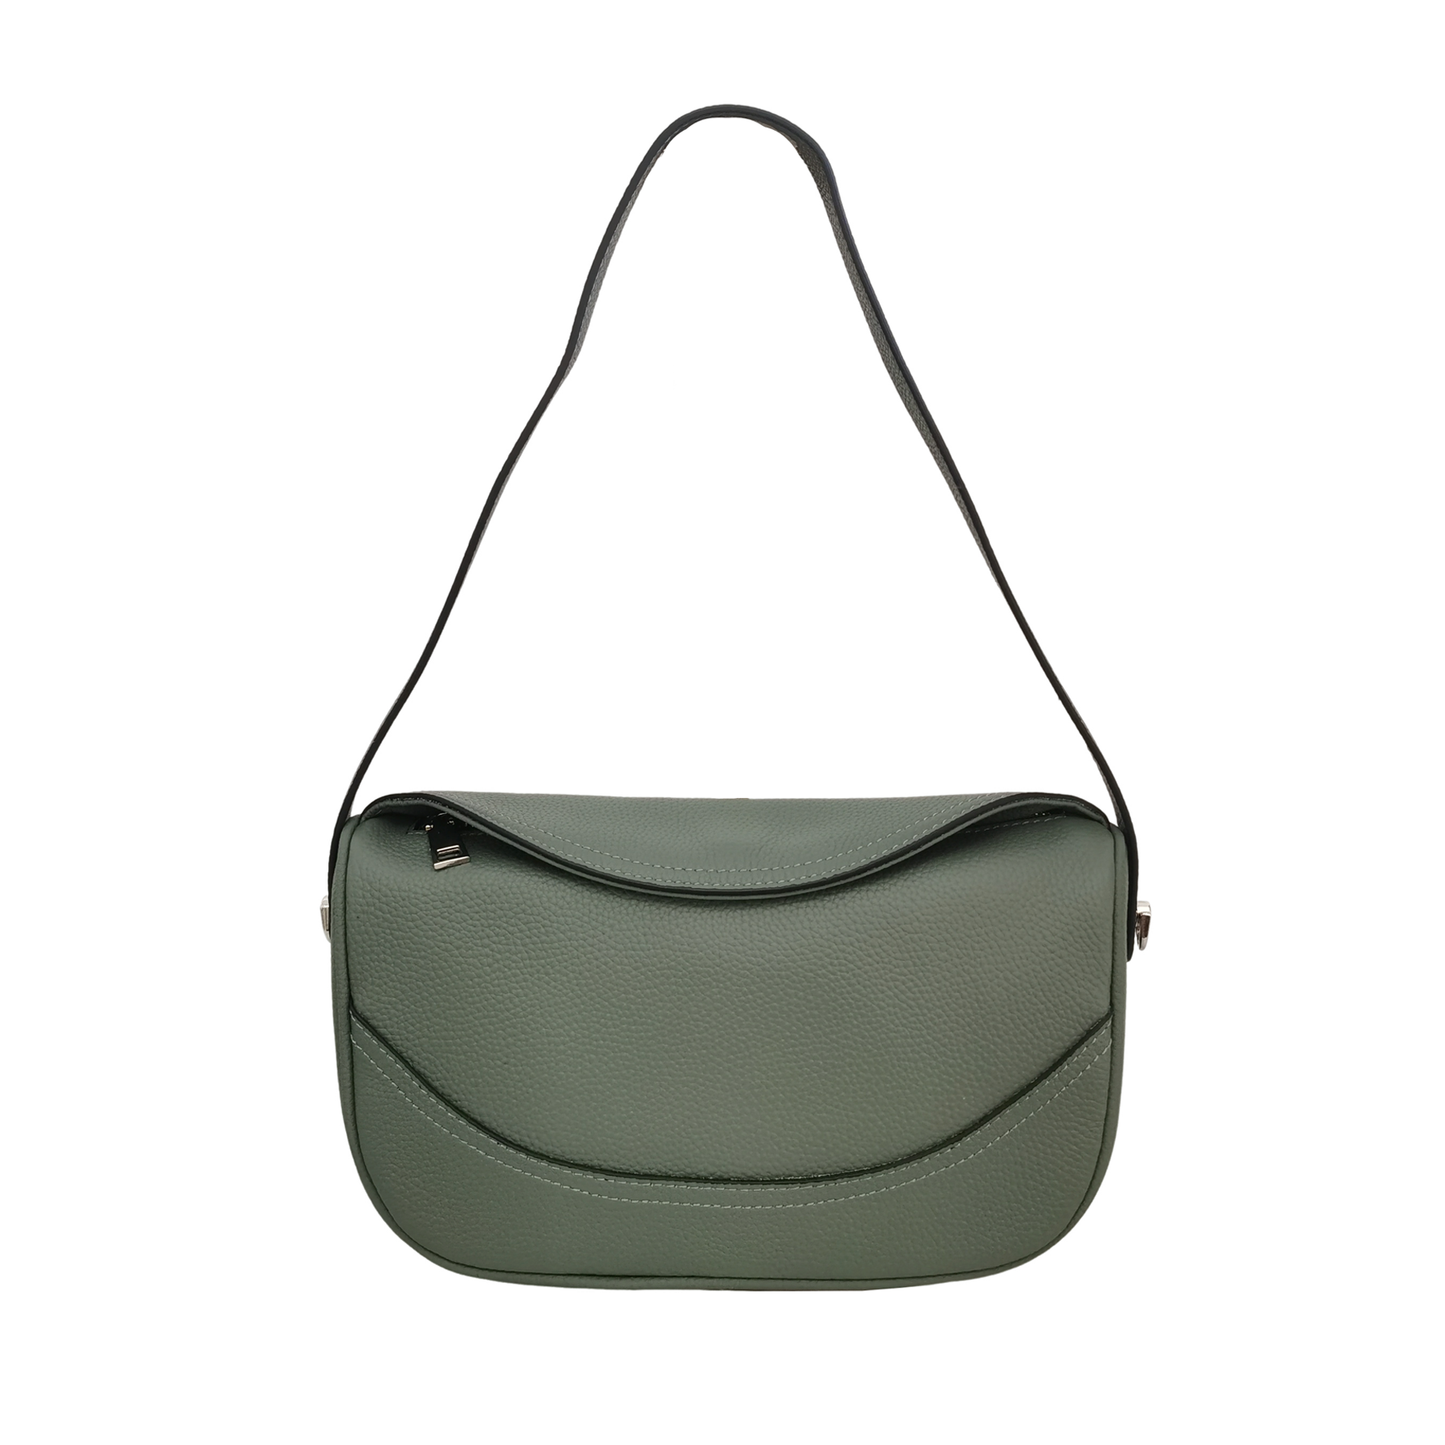 Women's genuine cowhide leather handbag Ingot V3 design